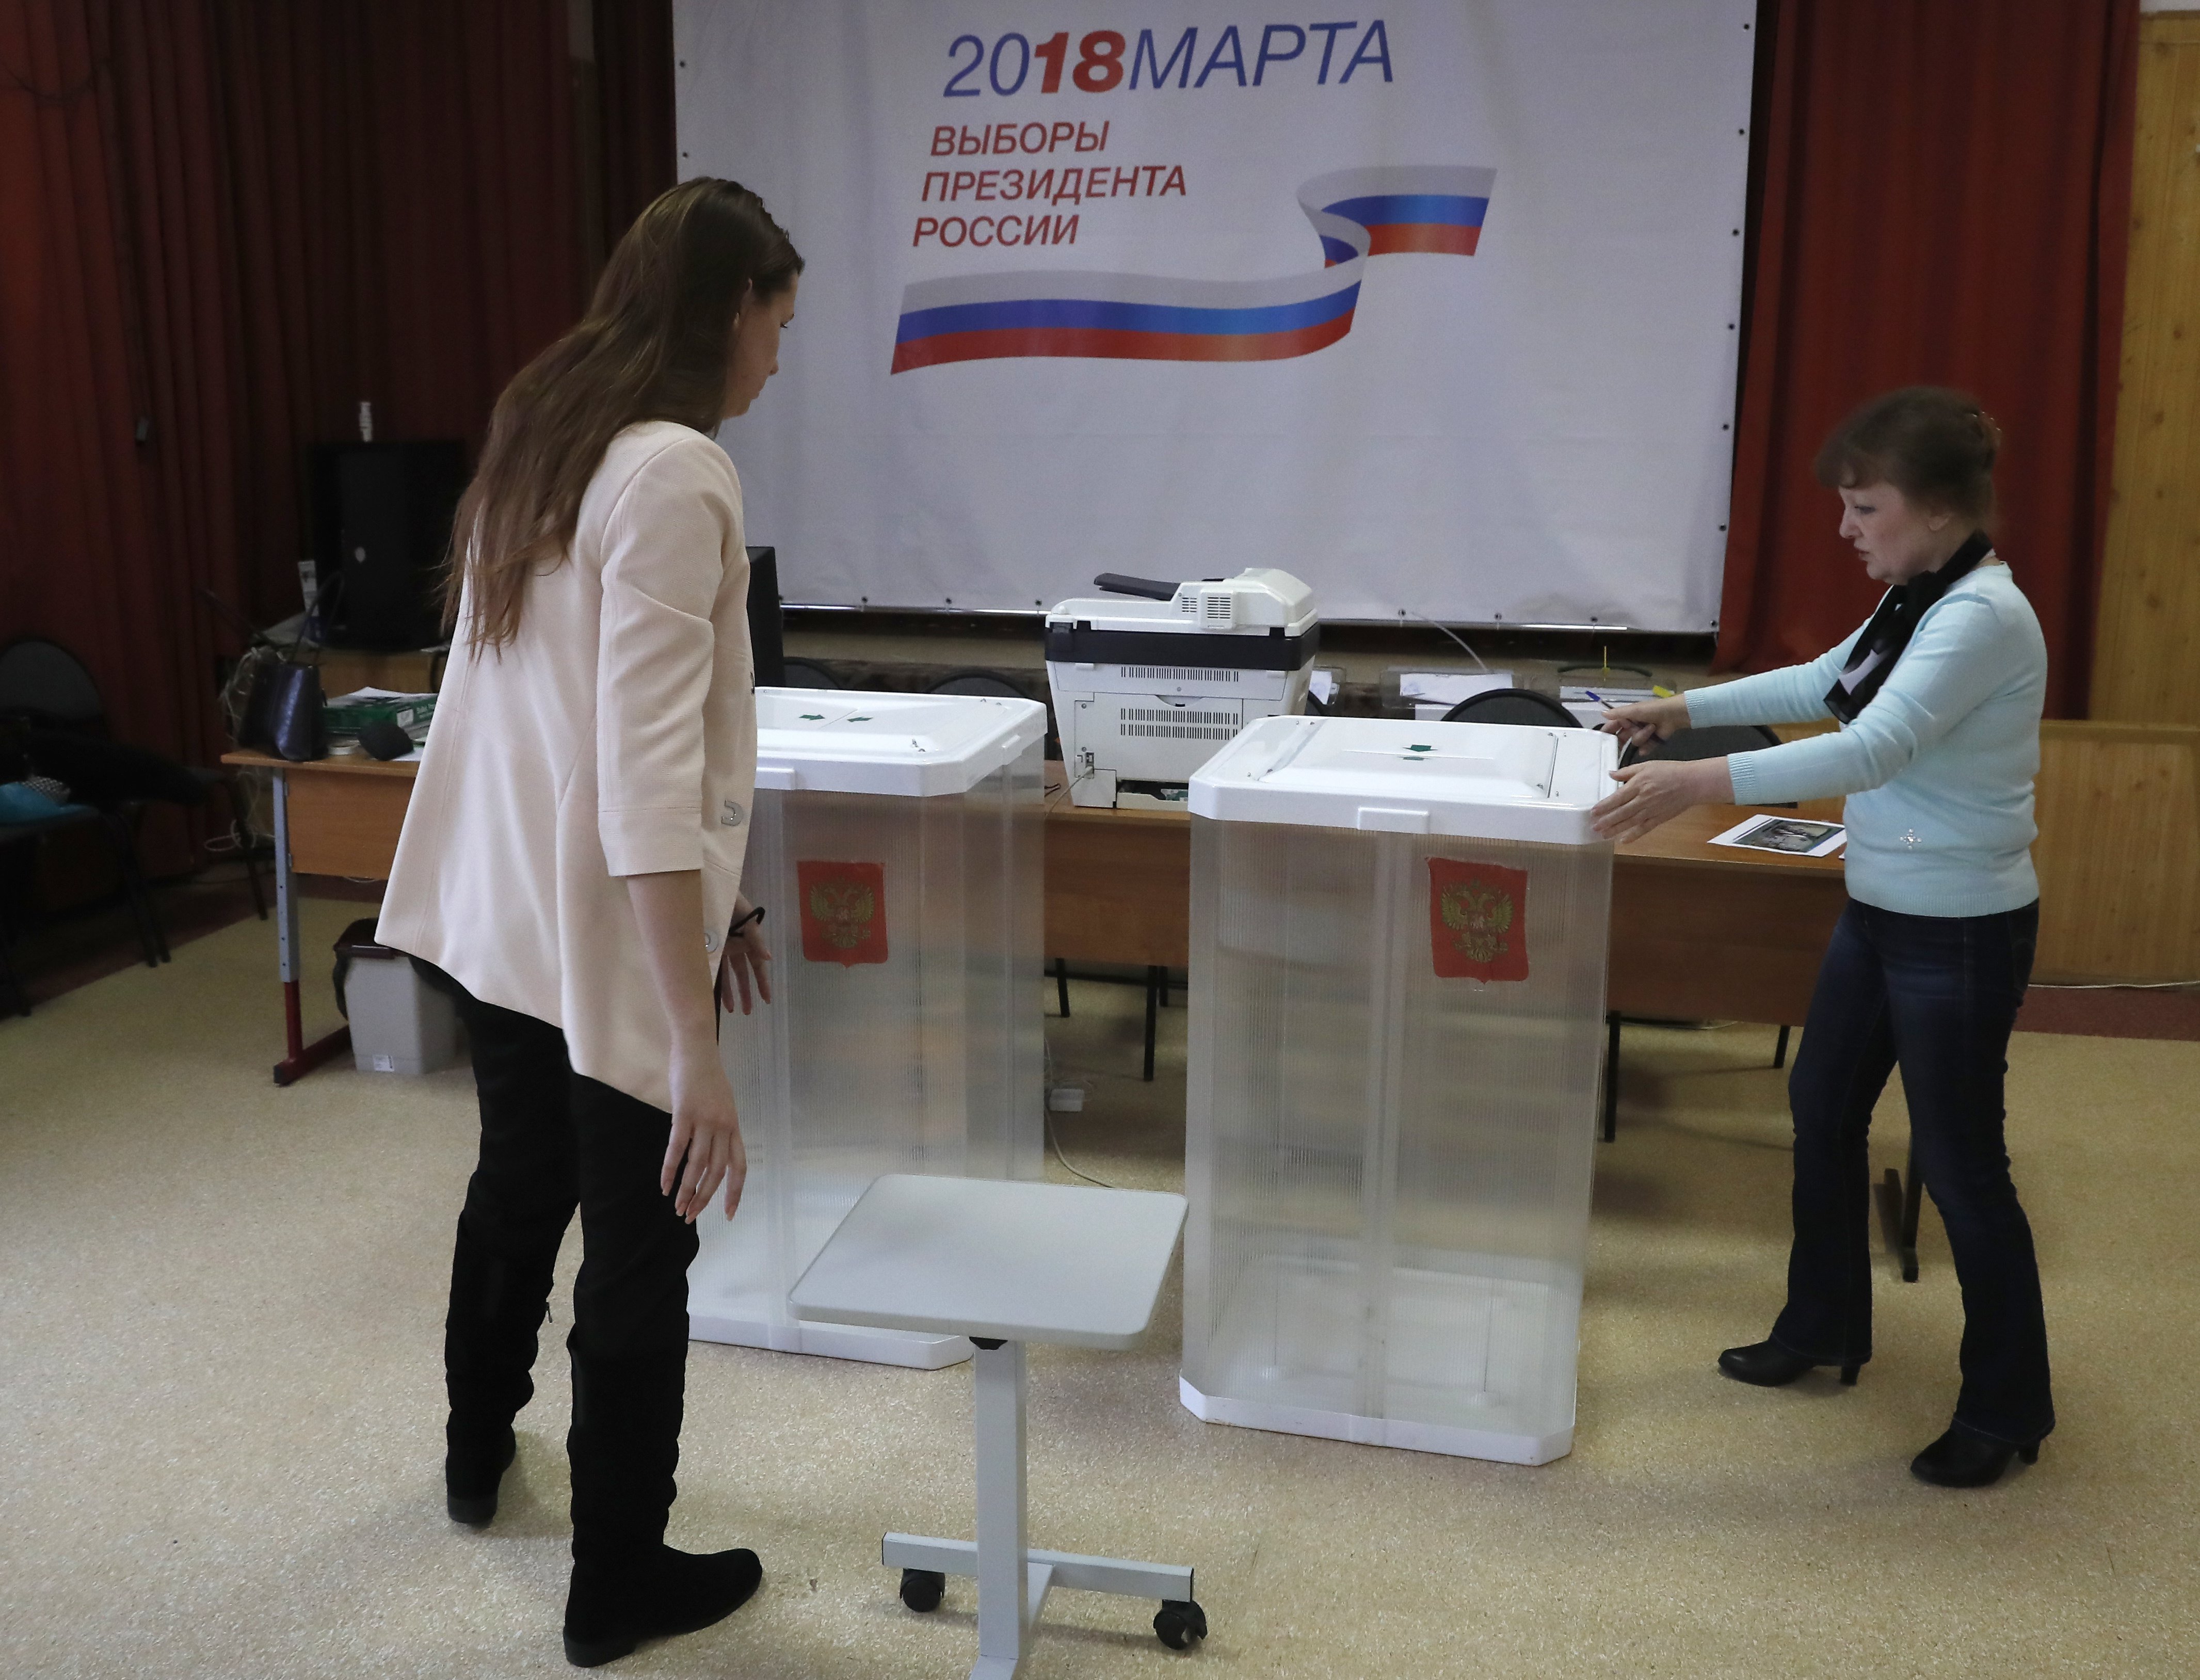 Moszkva, 2018. március 16. A helyi választási bizottság munkatársai urnákat állítanak fel egy moszkvai szavazóhelyiségben 2018. március 16-án, két nappal az orosz elnökválasztás előtt. A plakát feliratának jelentése: 2018. március - Oroszország elnökének megválasztása - A mi államunk, a mi elnökünk, a mi választásunk. (MTI/EPA/Szergej Ilnyickij)